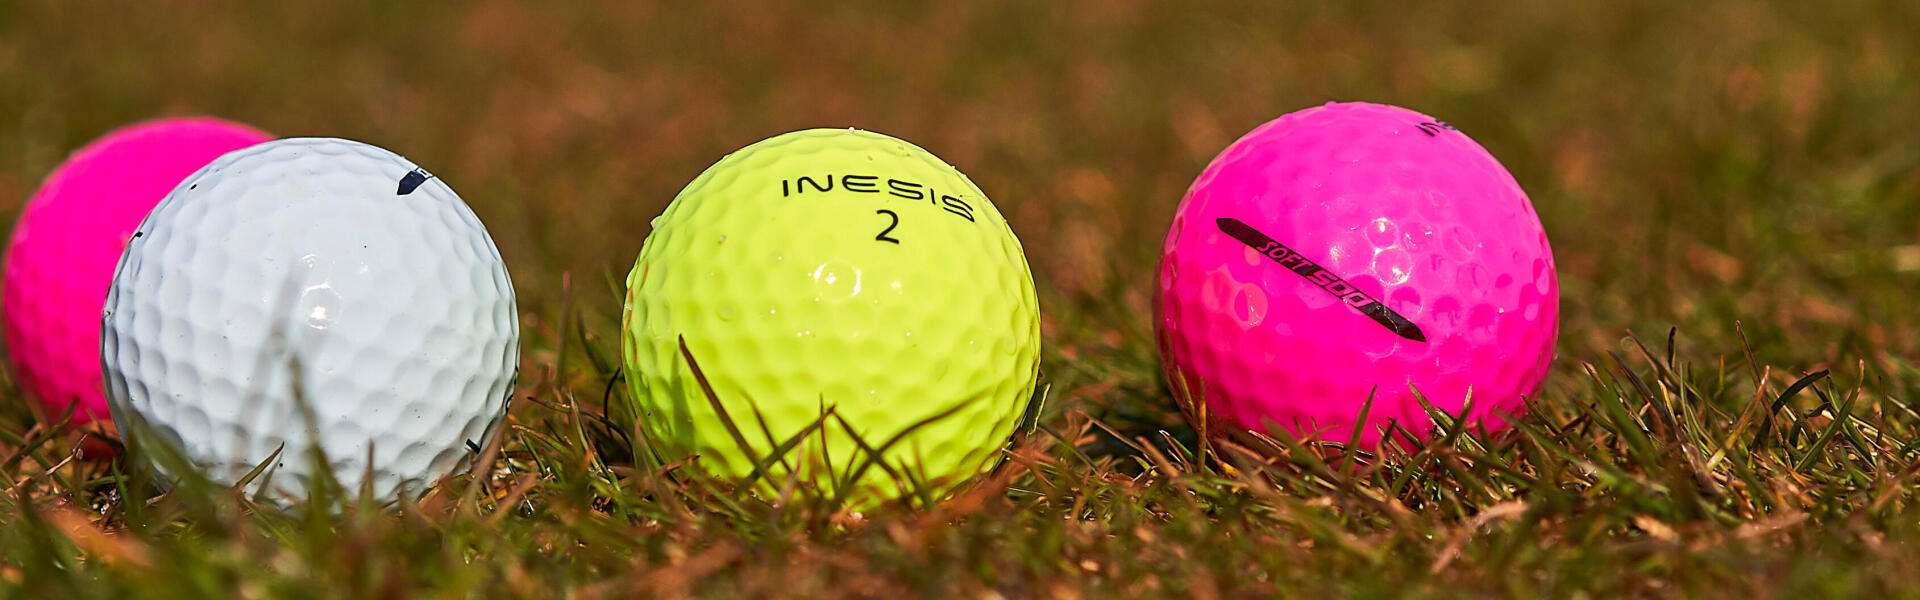 Balles de golf de couleur Inesis par Décathlon